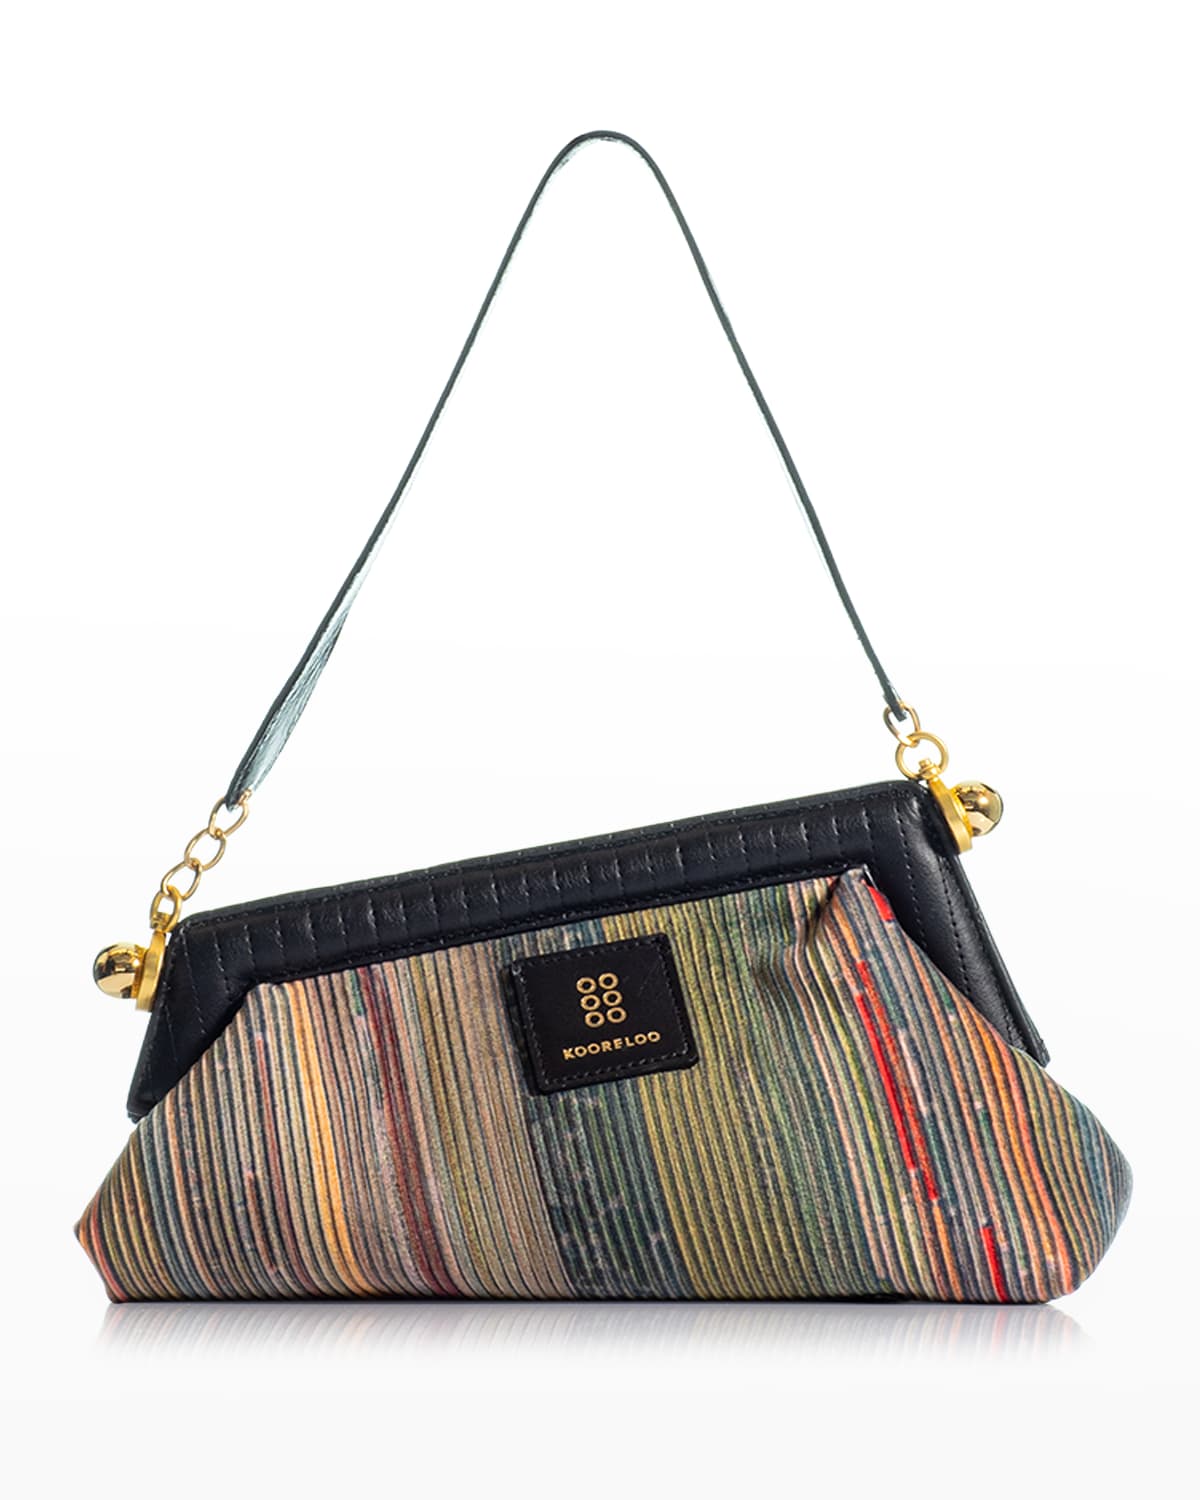 Kooreloo Multicolor Striped Asymmetrical Shoulder Bag